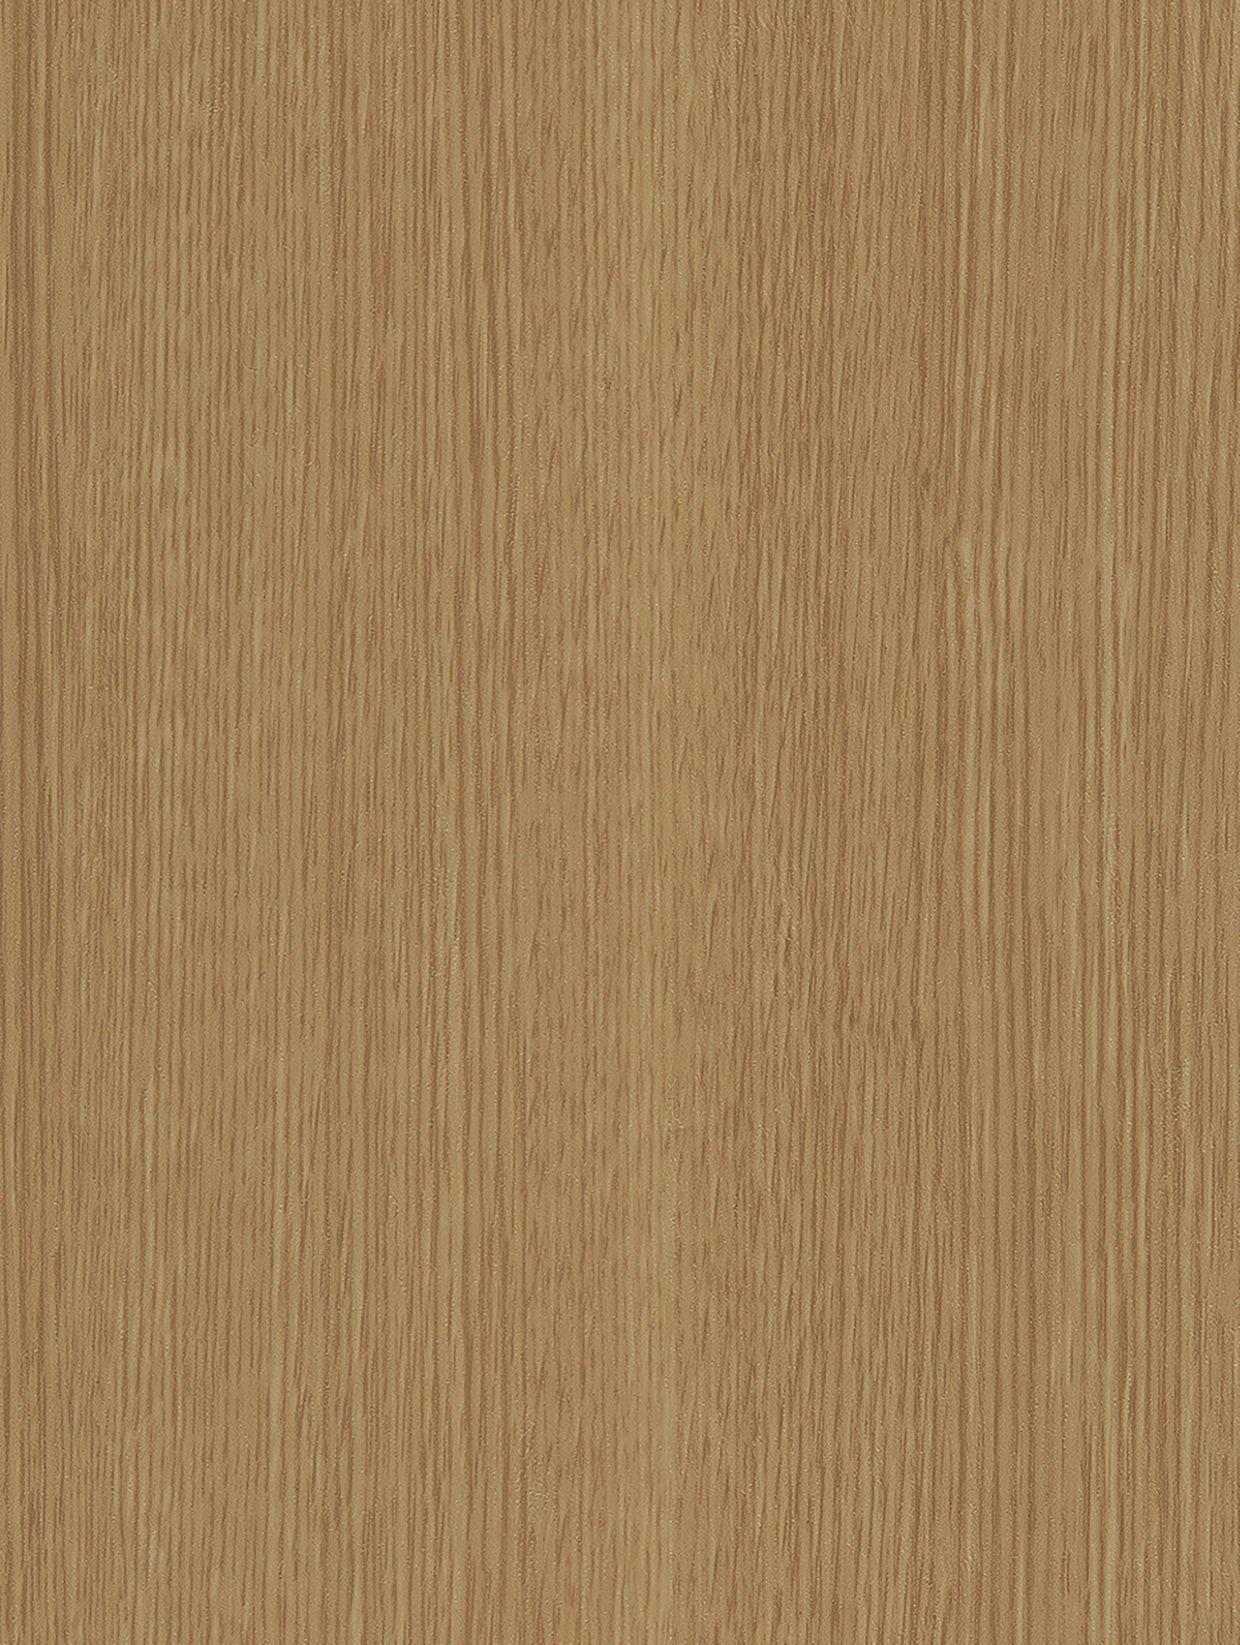 Wood - Light | Holzdekor Hell Rost/Soft/Strukturiert Musterfolie A5